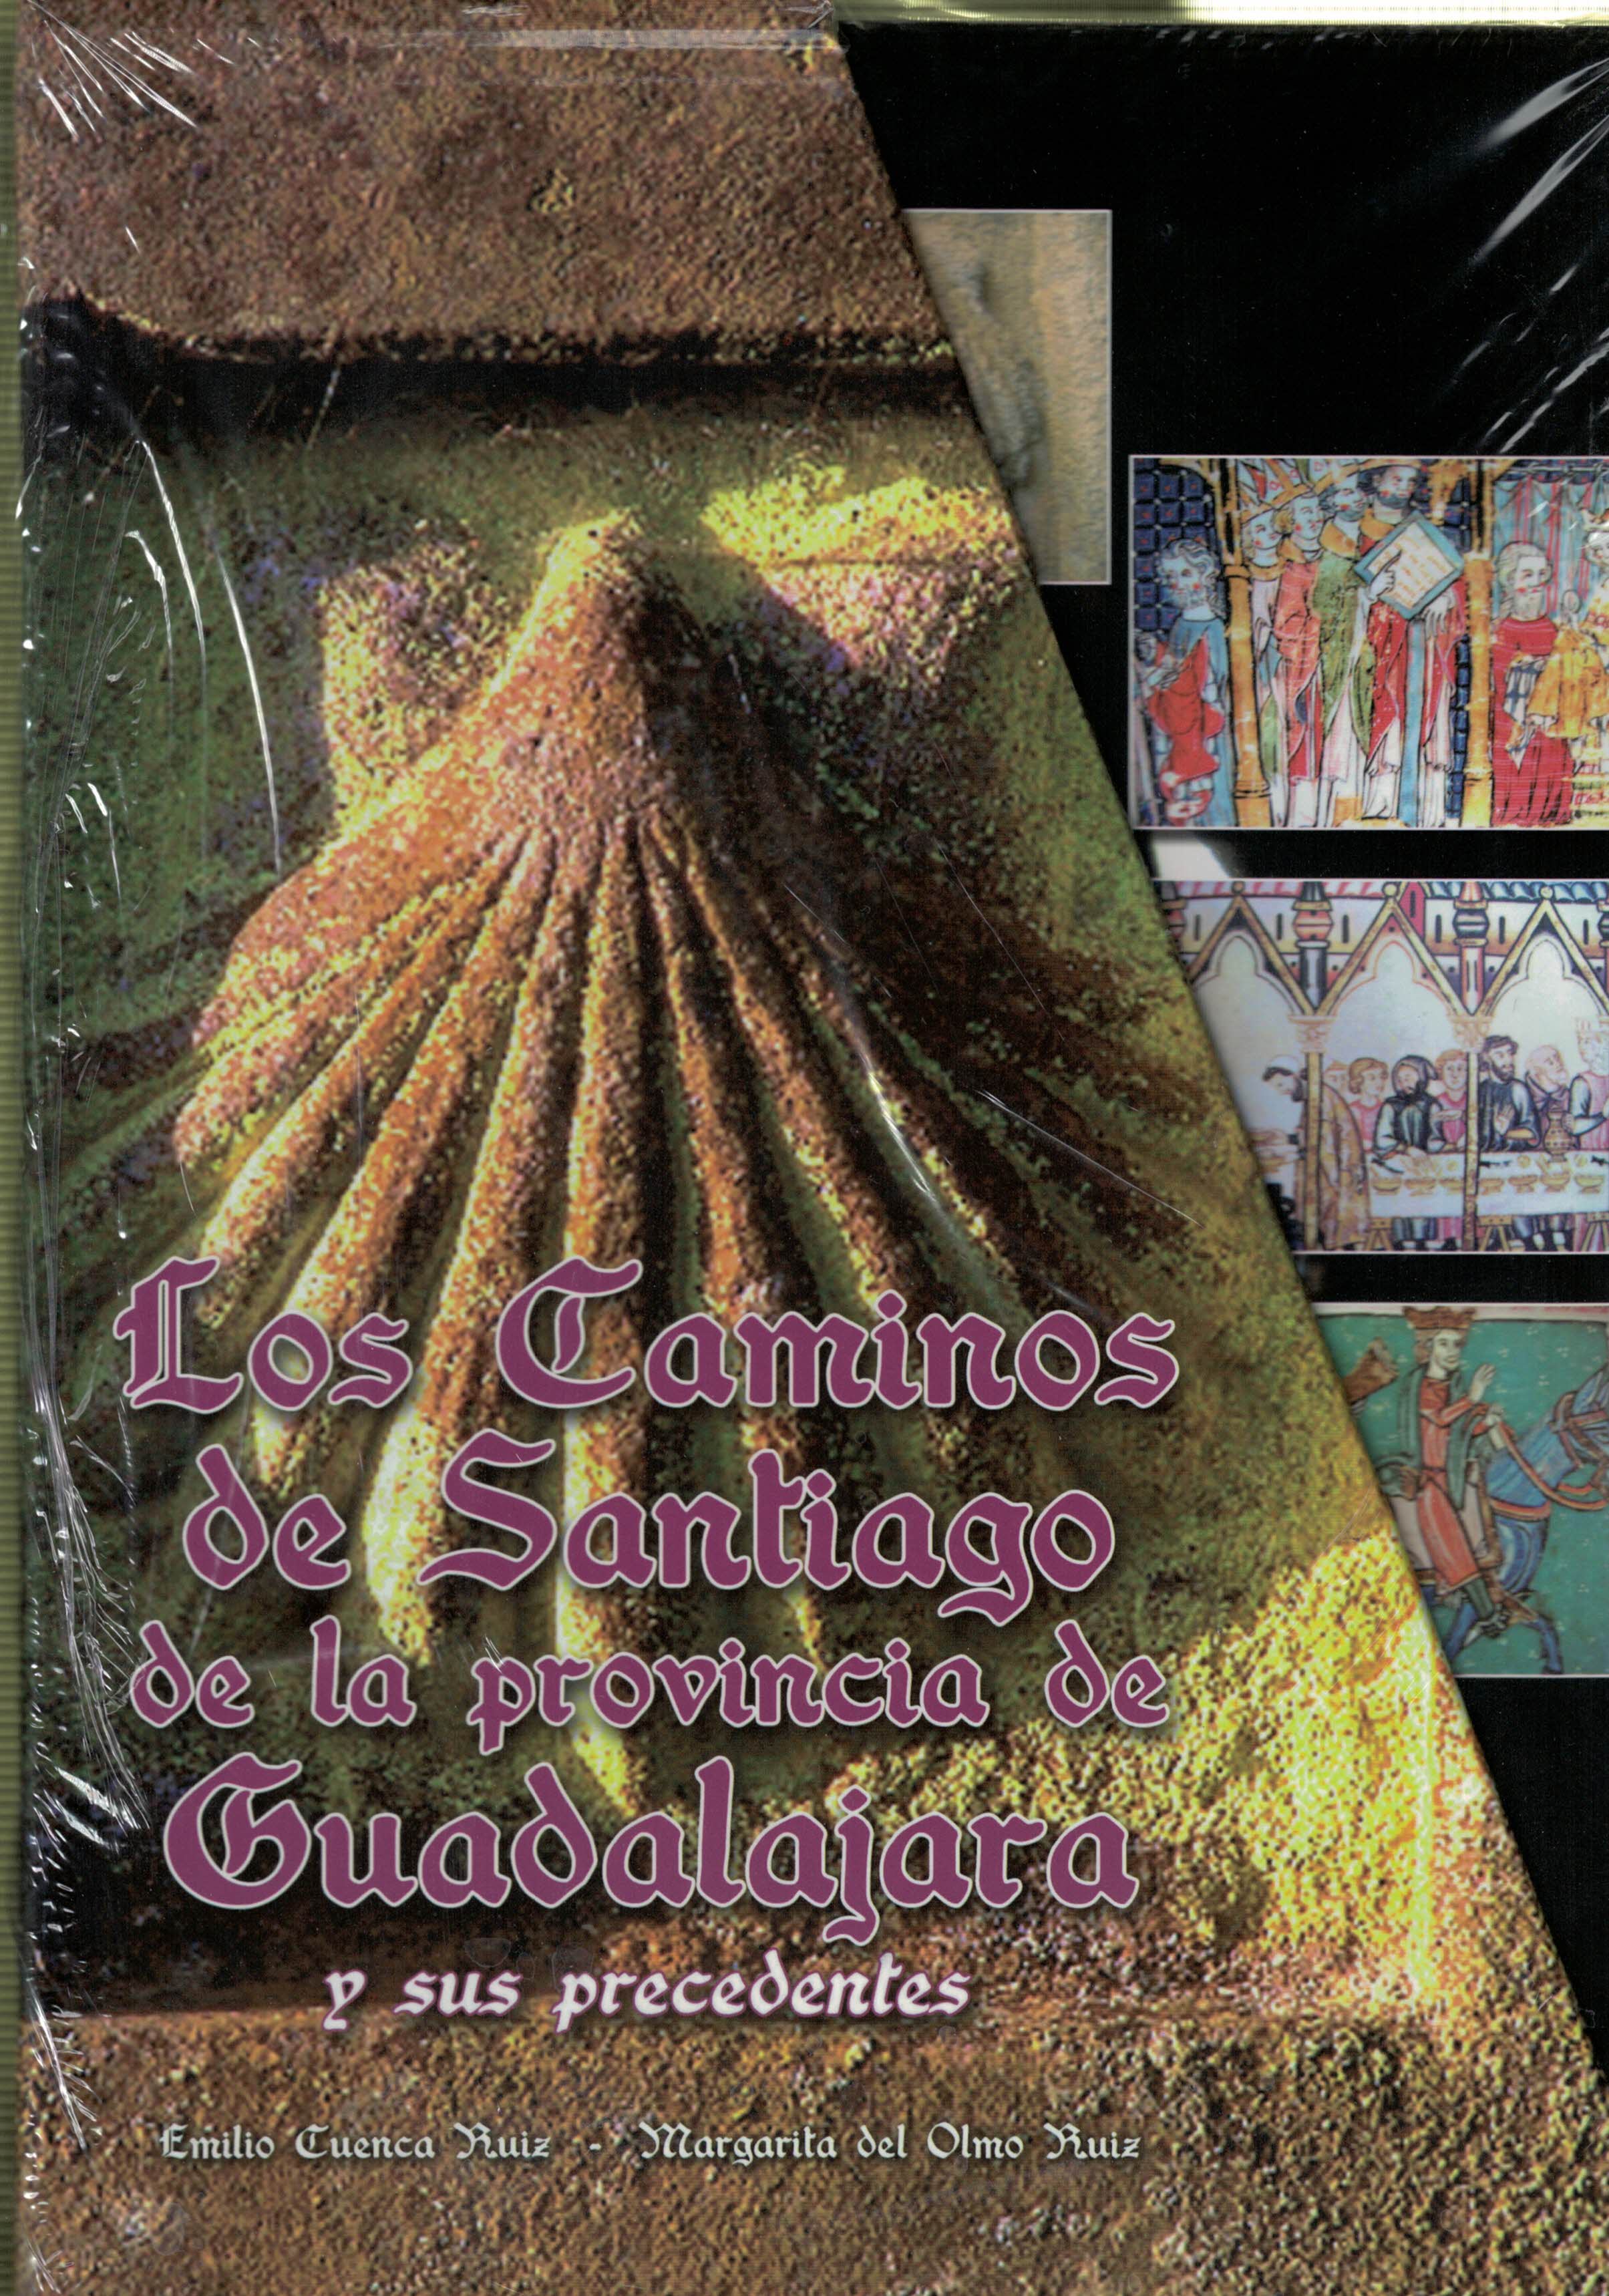 Los Caminos de Santiago de la provincia de Guadalajara y sus precedentes